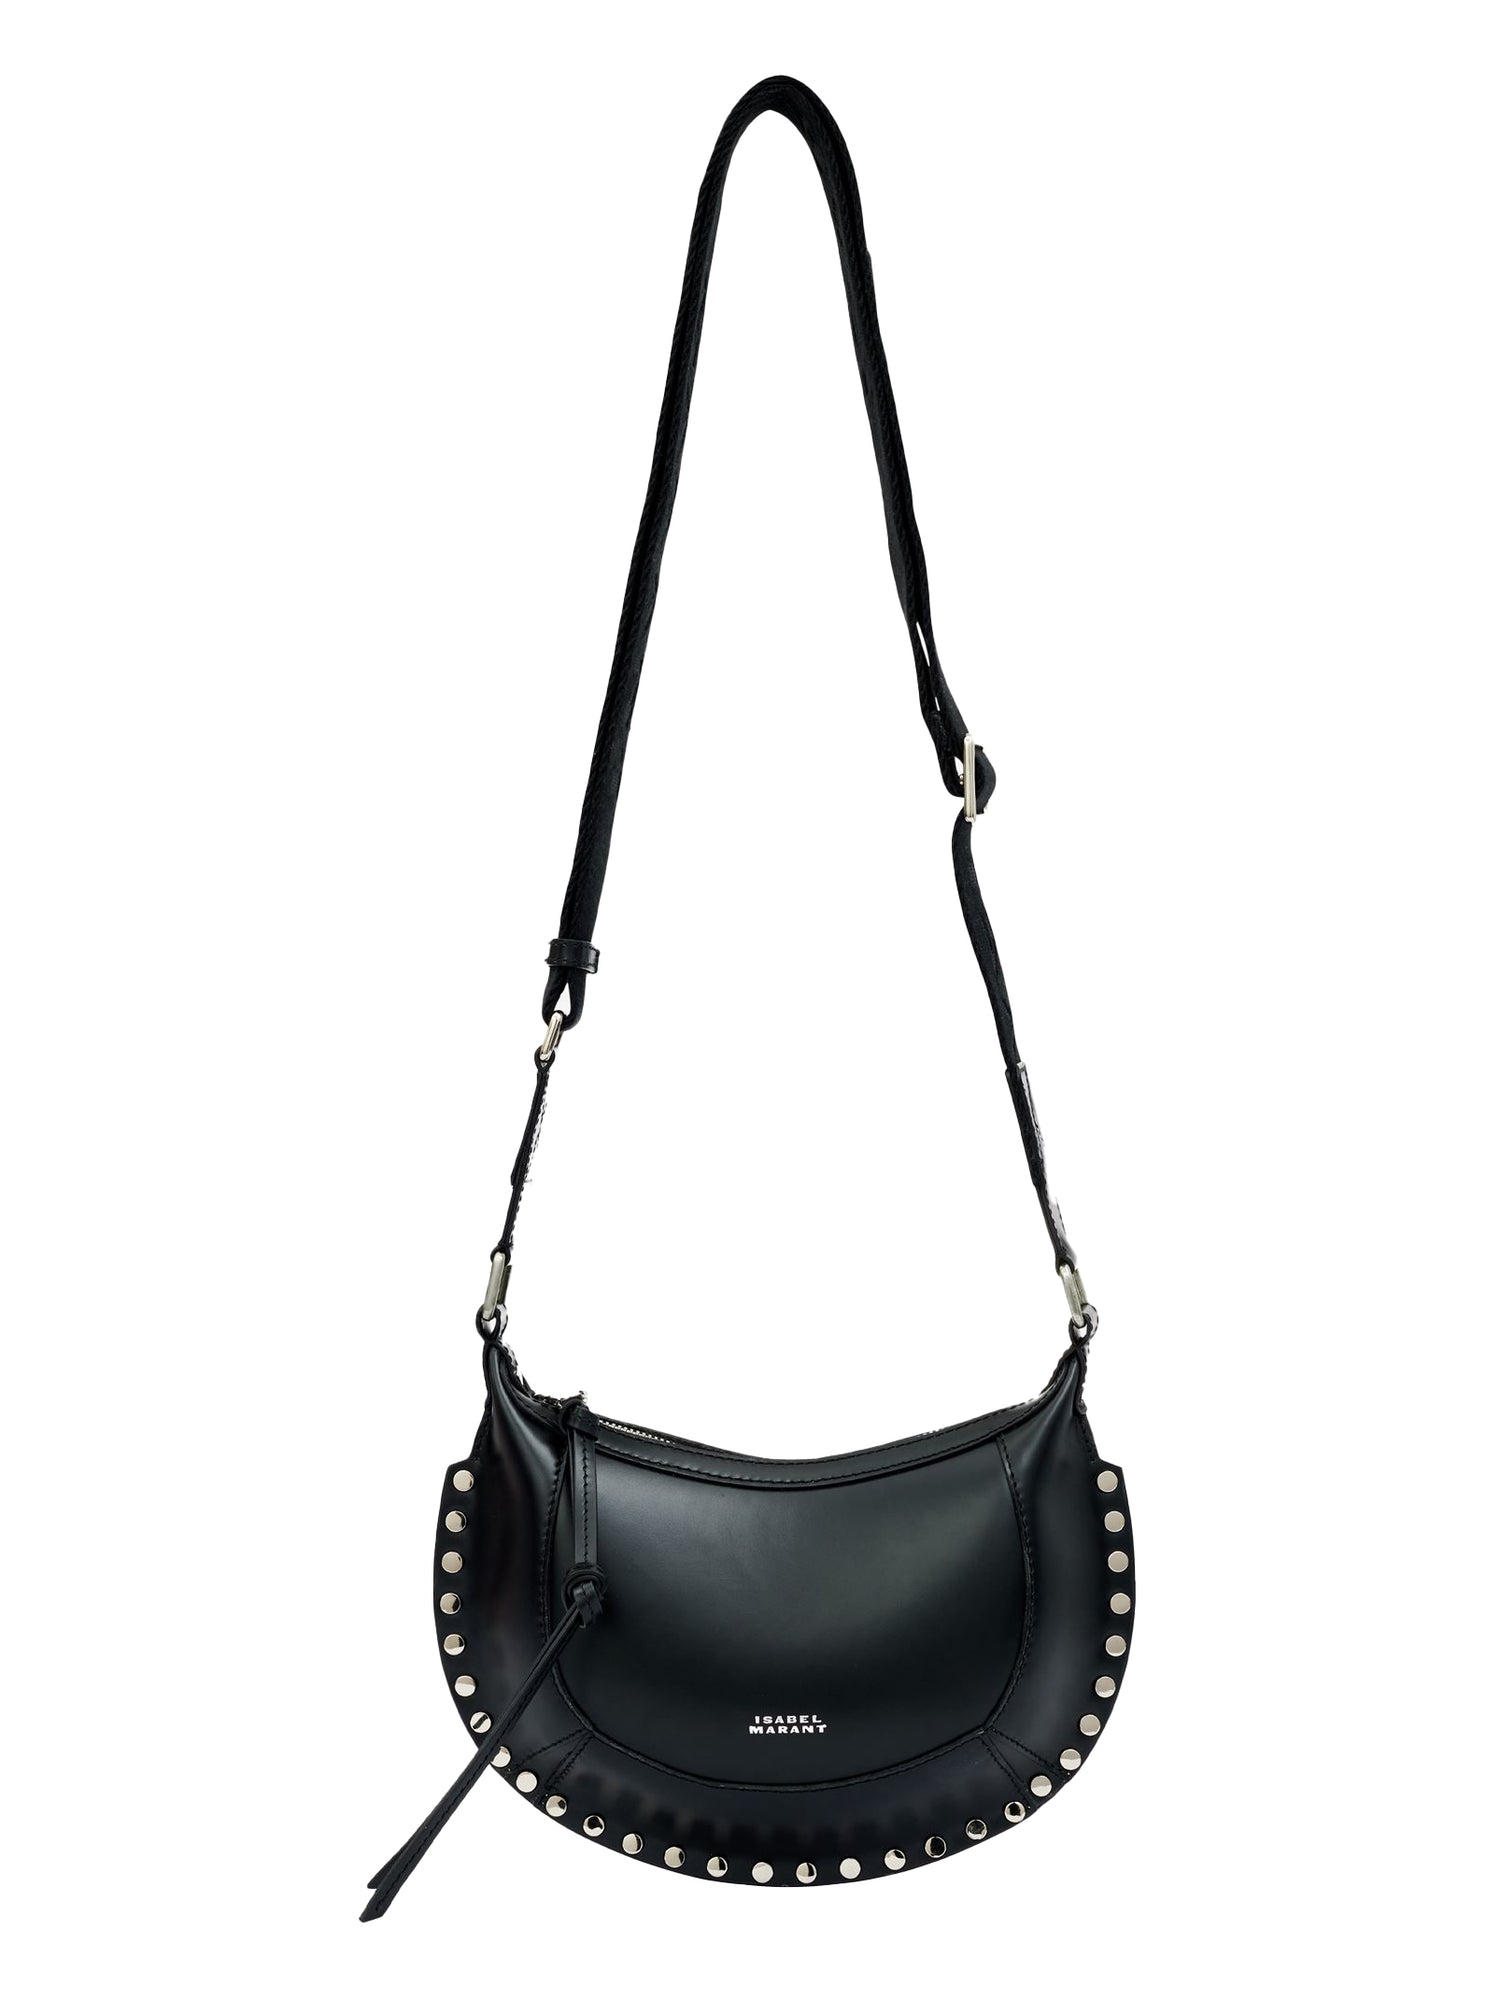 MINI MOON handbag, black/silver